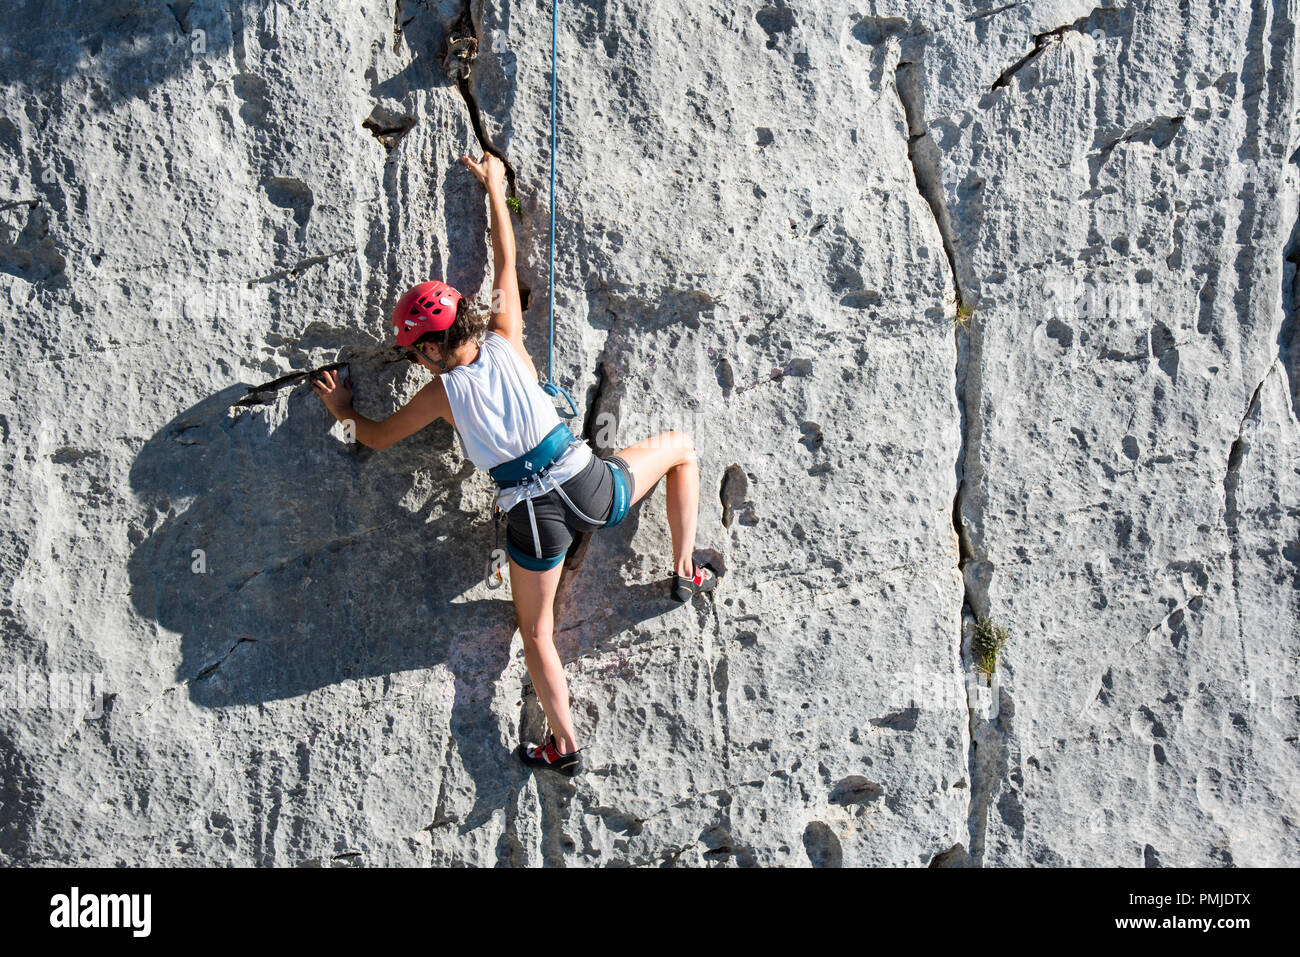 Female rock climber climbing rock face in the Gorges du Verdon / Verdon Gorge canyon, Alpes-de-Haute-Provence, Provence-Alpes-Côte d'Azur, France Stock Photo